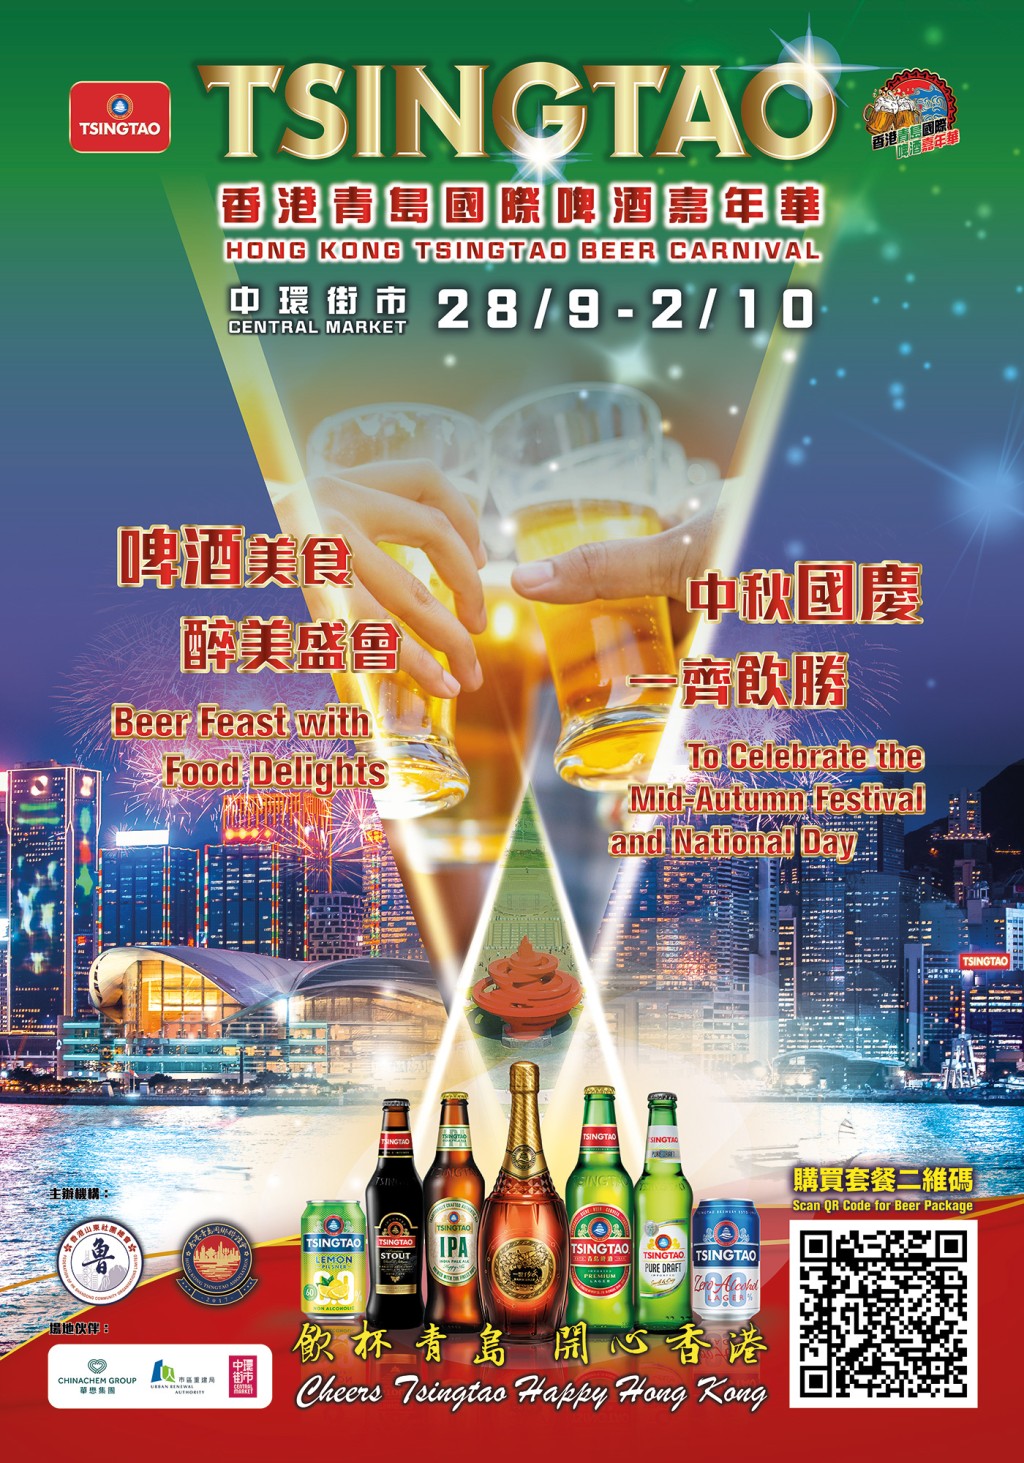 「香港青島國際啤酒嘉年華」將於9月28日至10月2日在中環街市舉行。主辦方提供